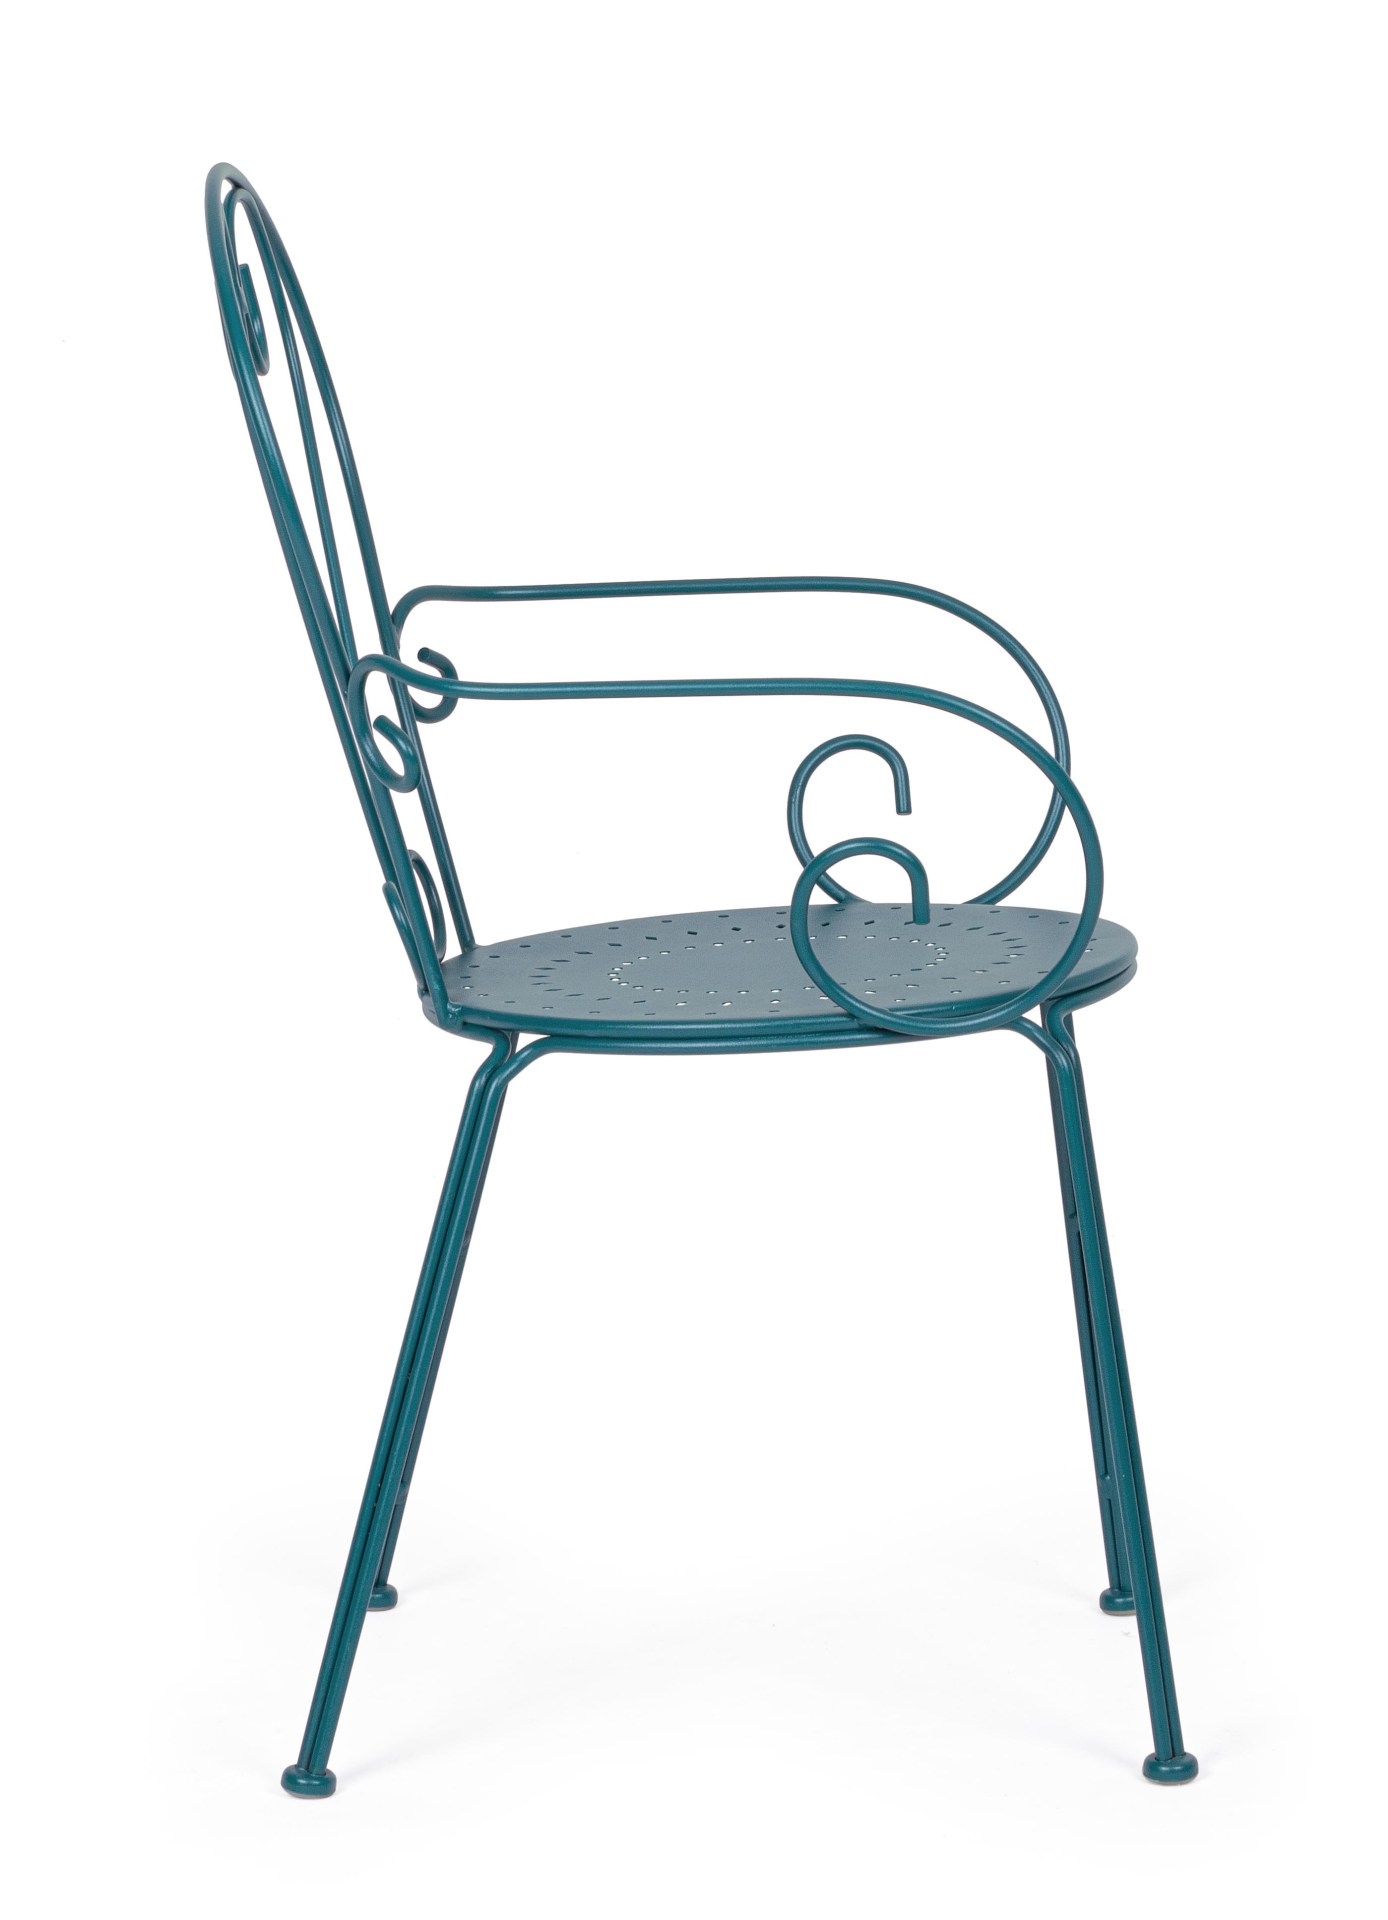 Der Gartenstuhl Etienne überzeugt mit seinem klassischen Design. Gefertigt wurde er aus Aluminium, welches einen blauen Farbton besitzen. Das Gestell ist aus Aluminium und hat eine blauen Farbe. Der Stuhl verfügt über eine Sitzhöhe von 43 cm und ist für d